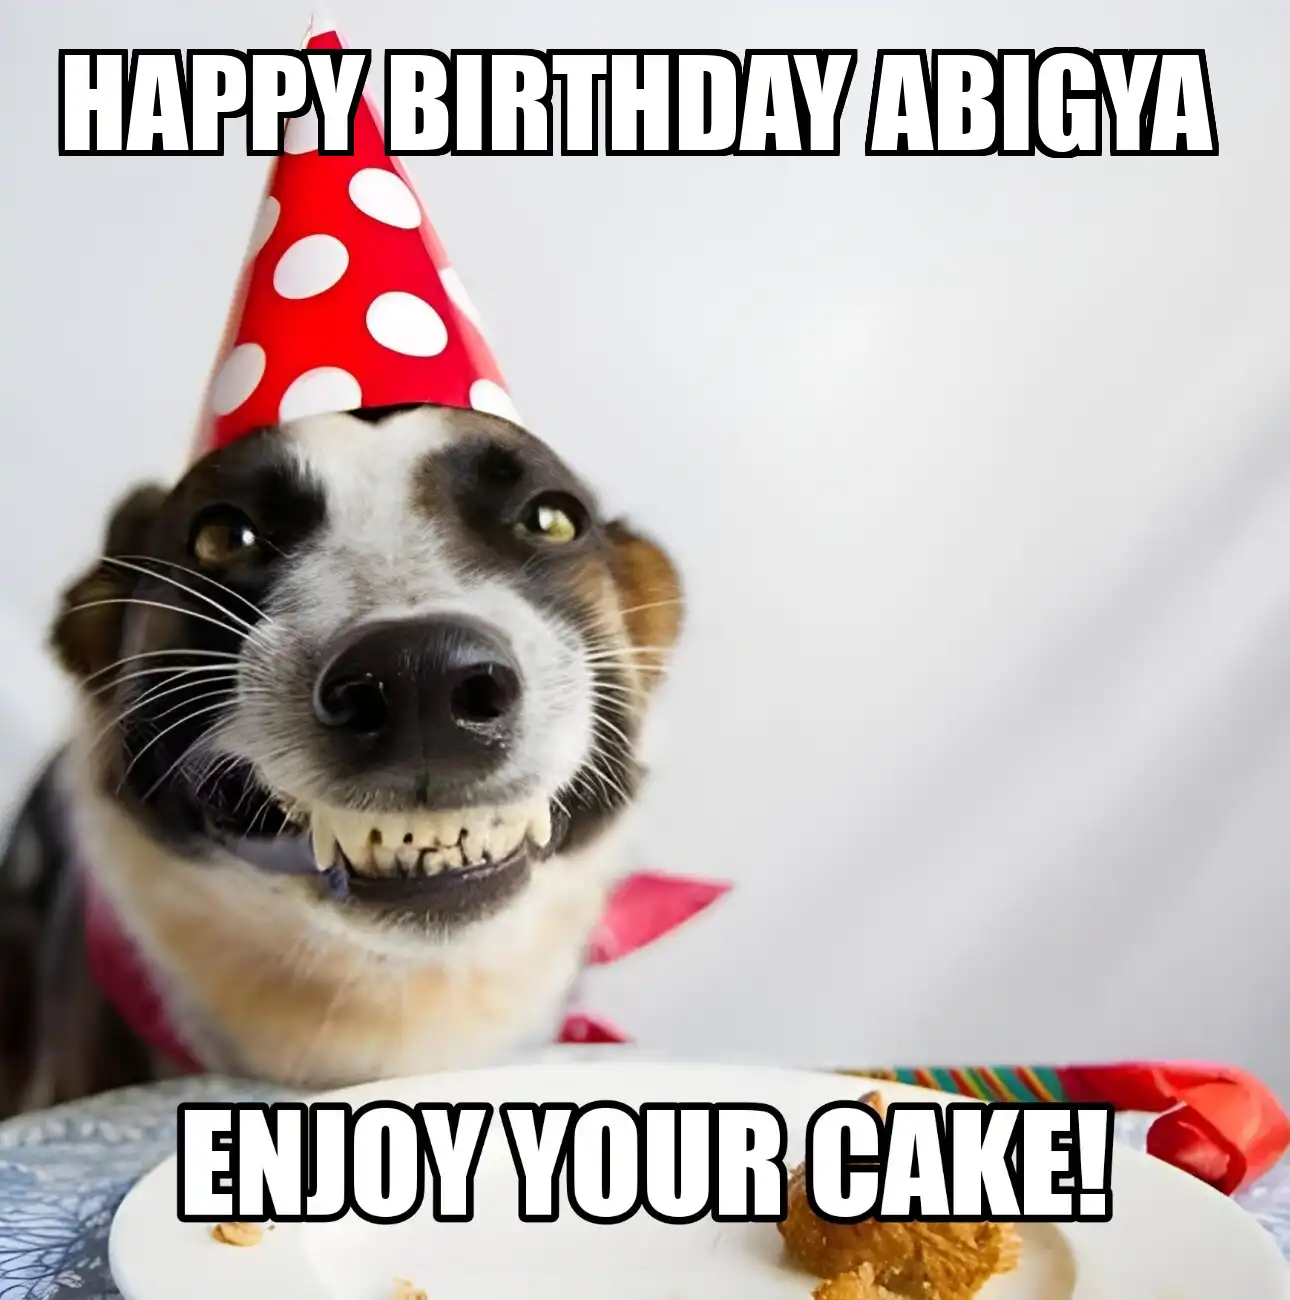 Happy Birthday Abigya Enjoy Your Cake Dog Meme